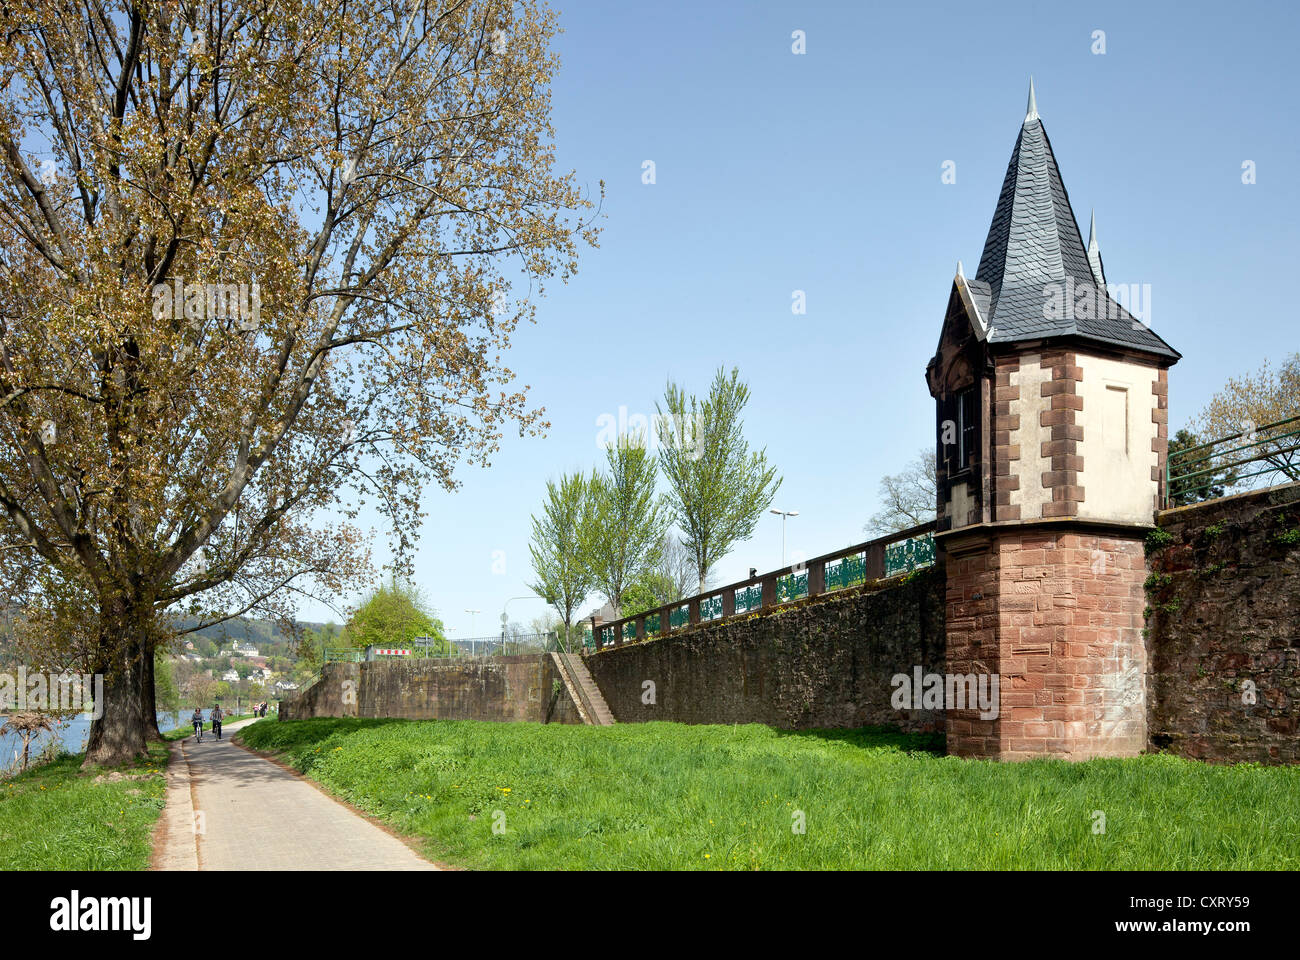 Stadtmauer und Gebäude, die Mosel Promenade, Trier, Rheinland-Pfalz, Deutschland, Europa, PublicGround Ebene Stockfoto